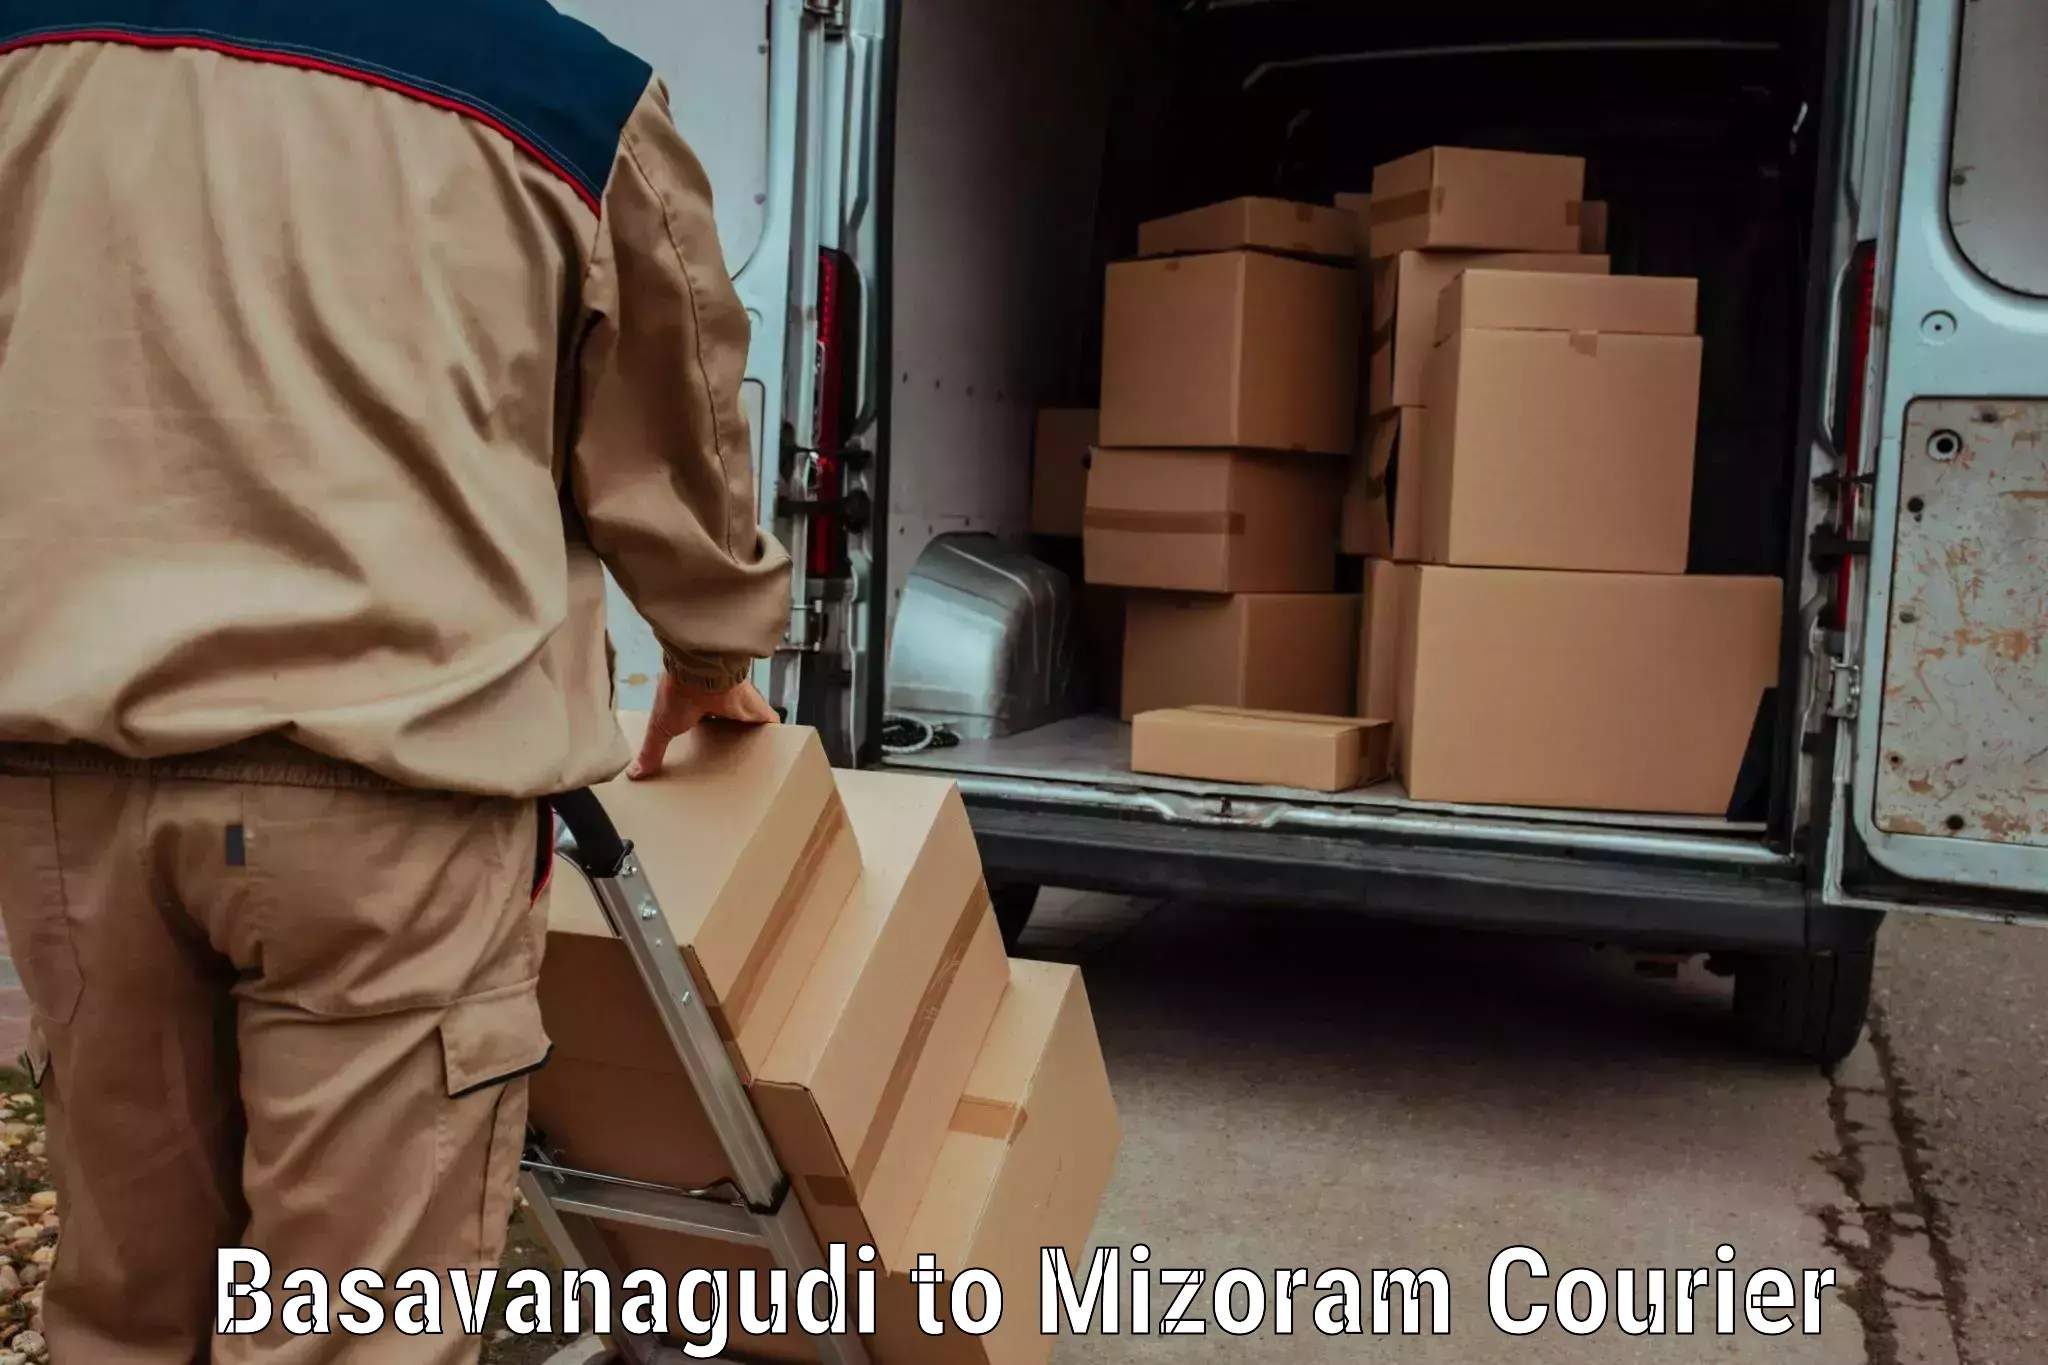 Courier service comparison Basavanagudi to Aizawl